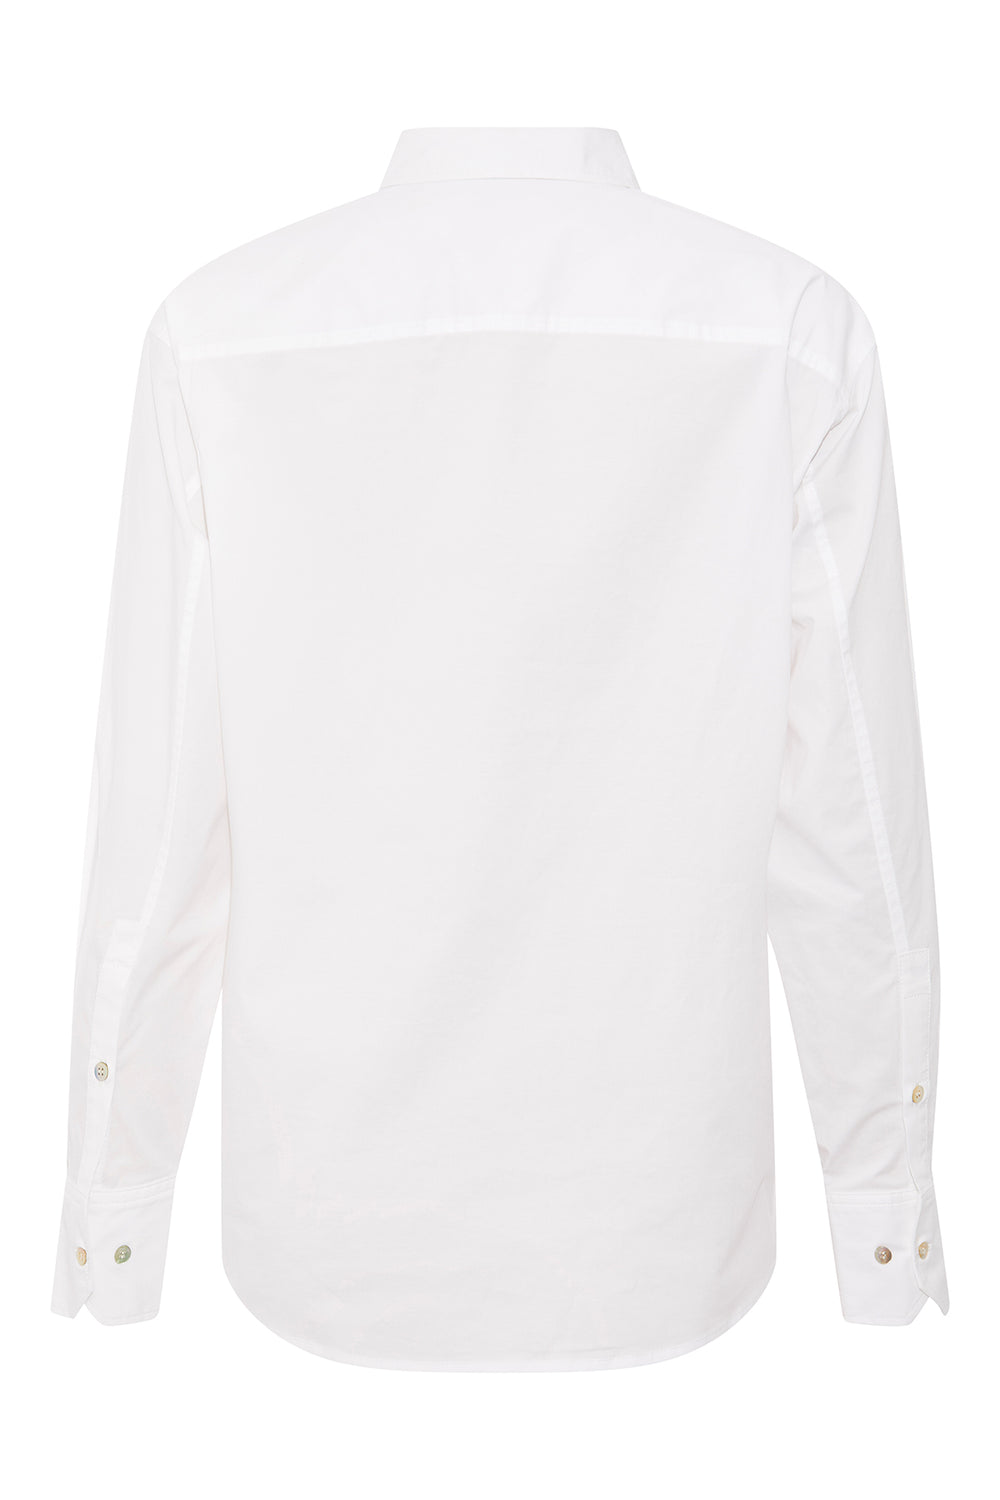 PBO Bizzy skjorte SHIRTS 01 White